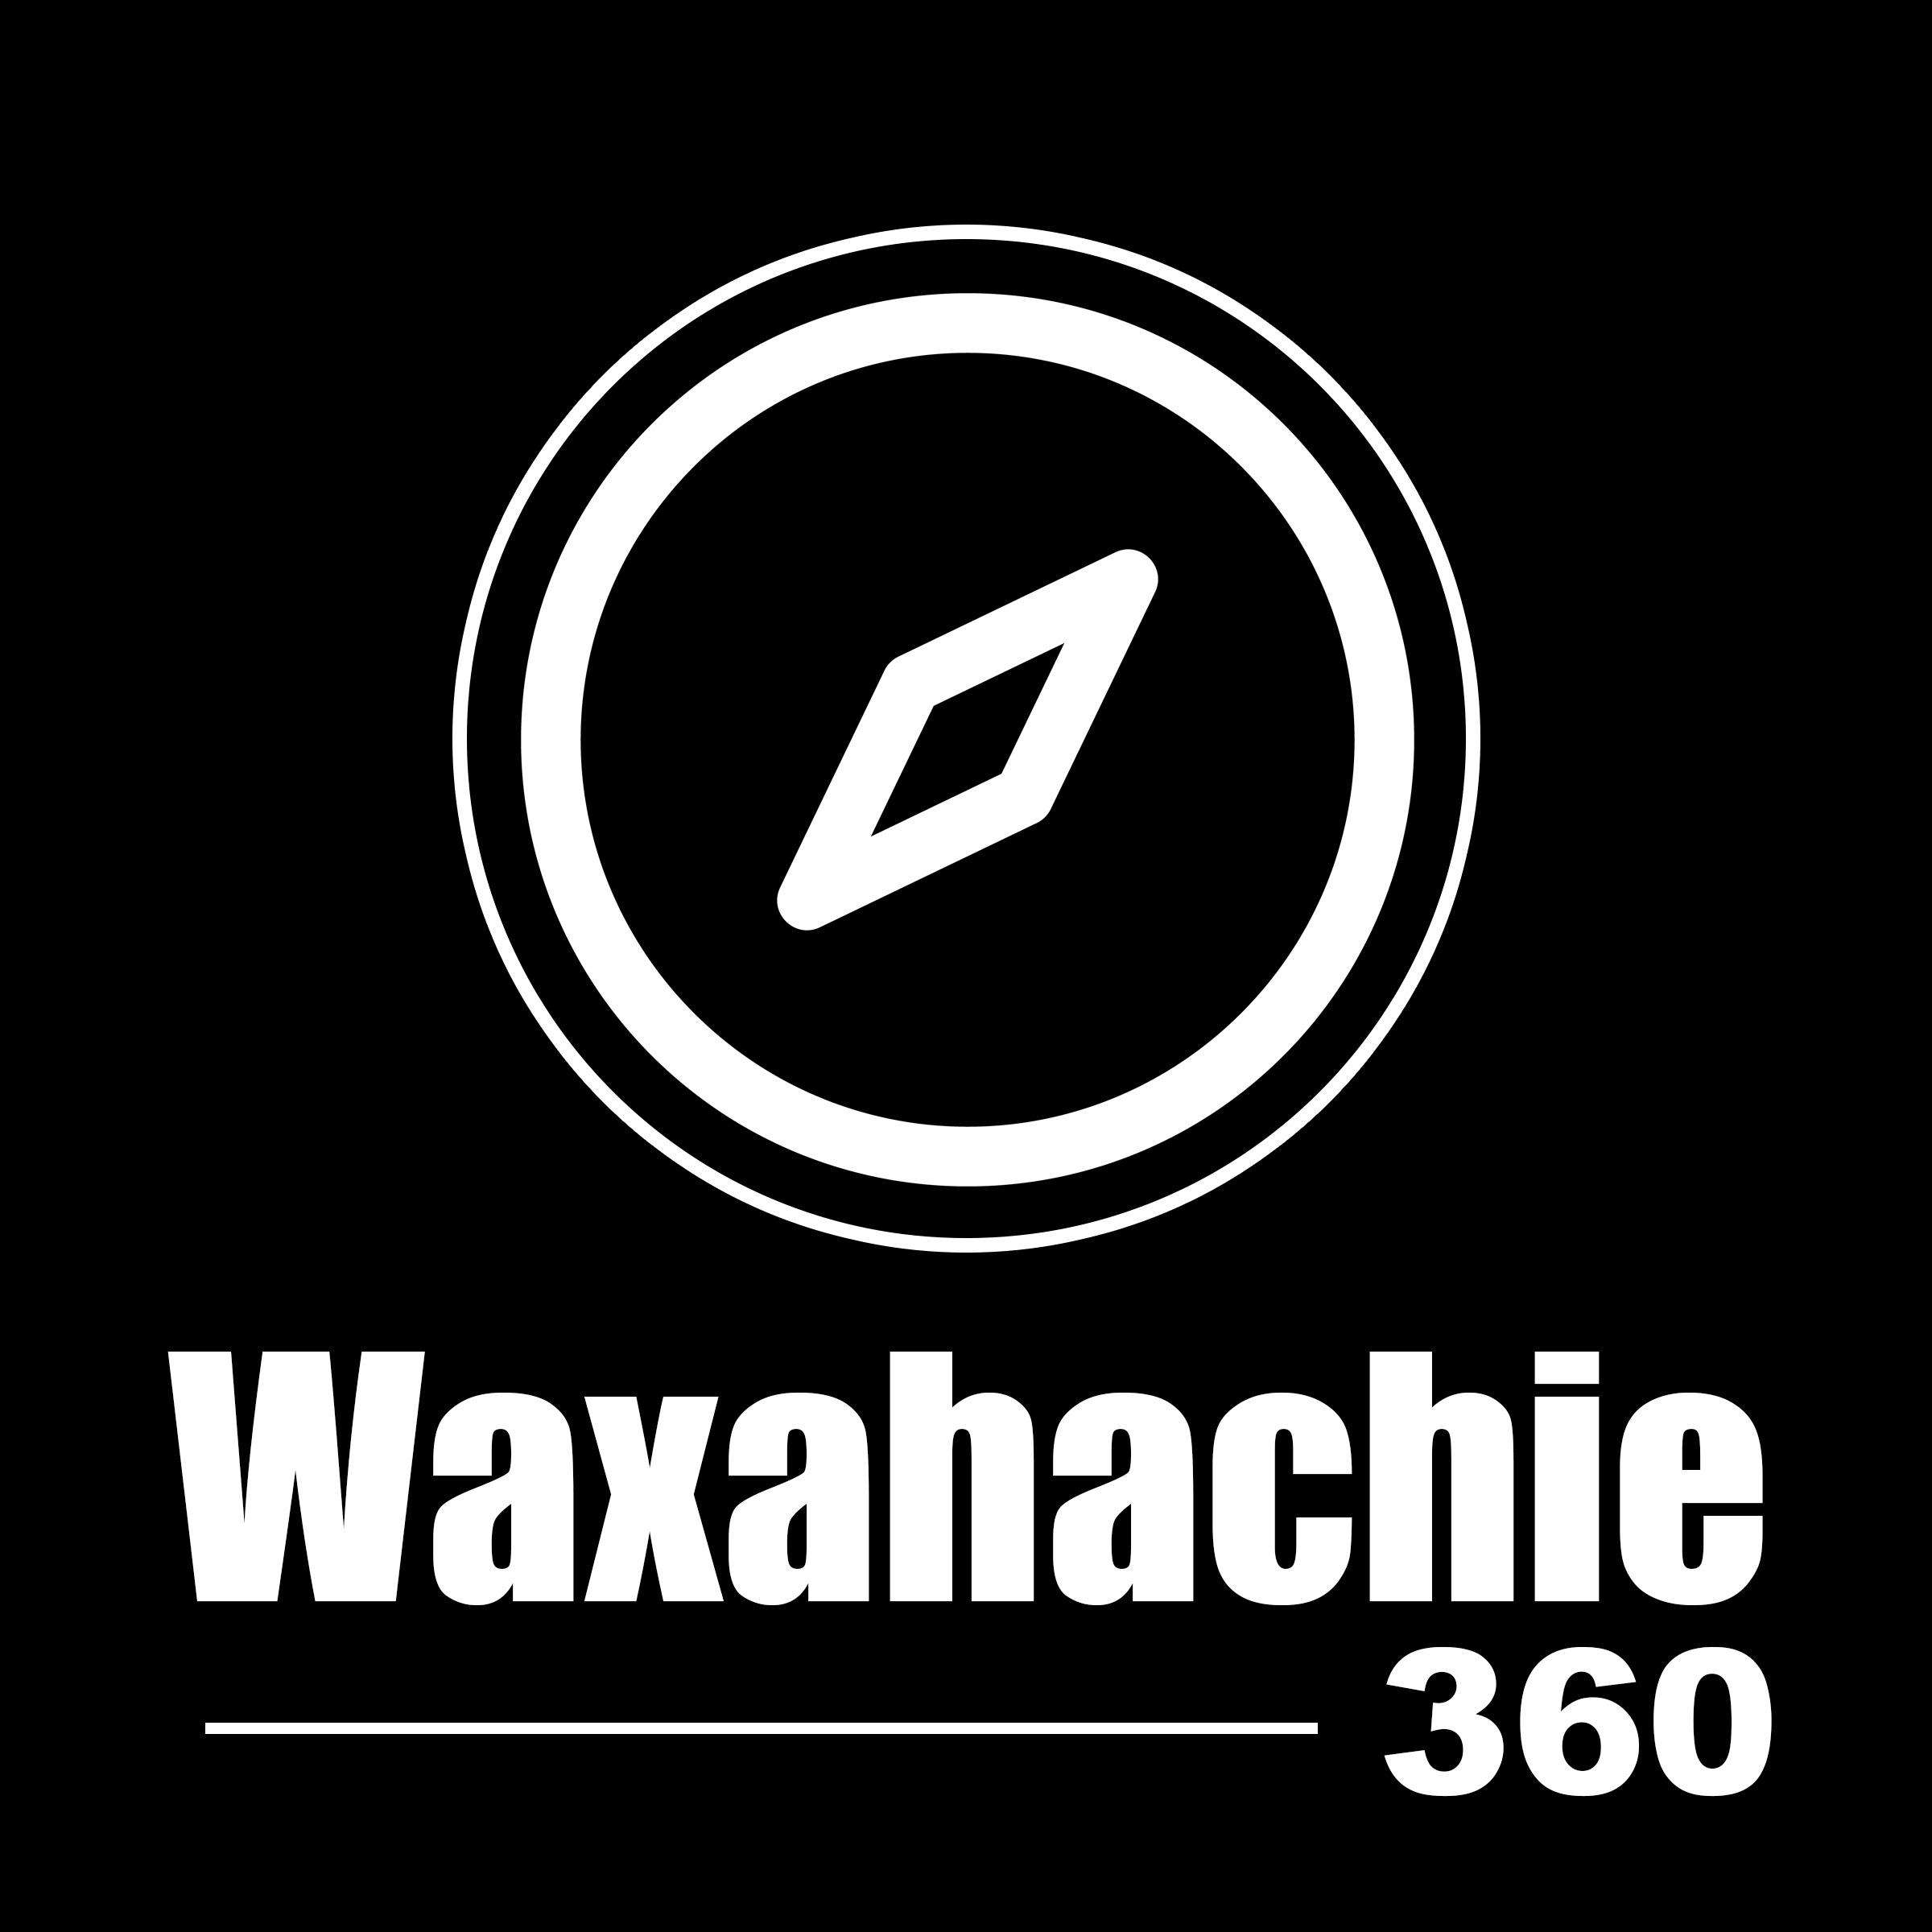 Waxahachie 360